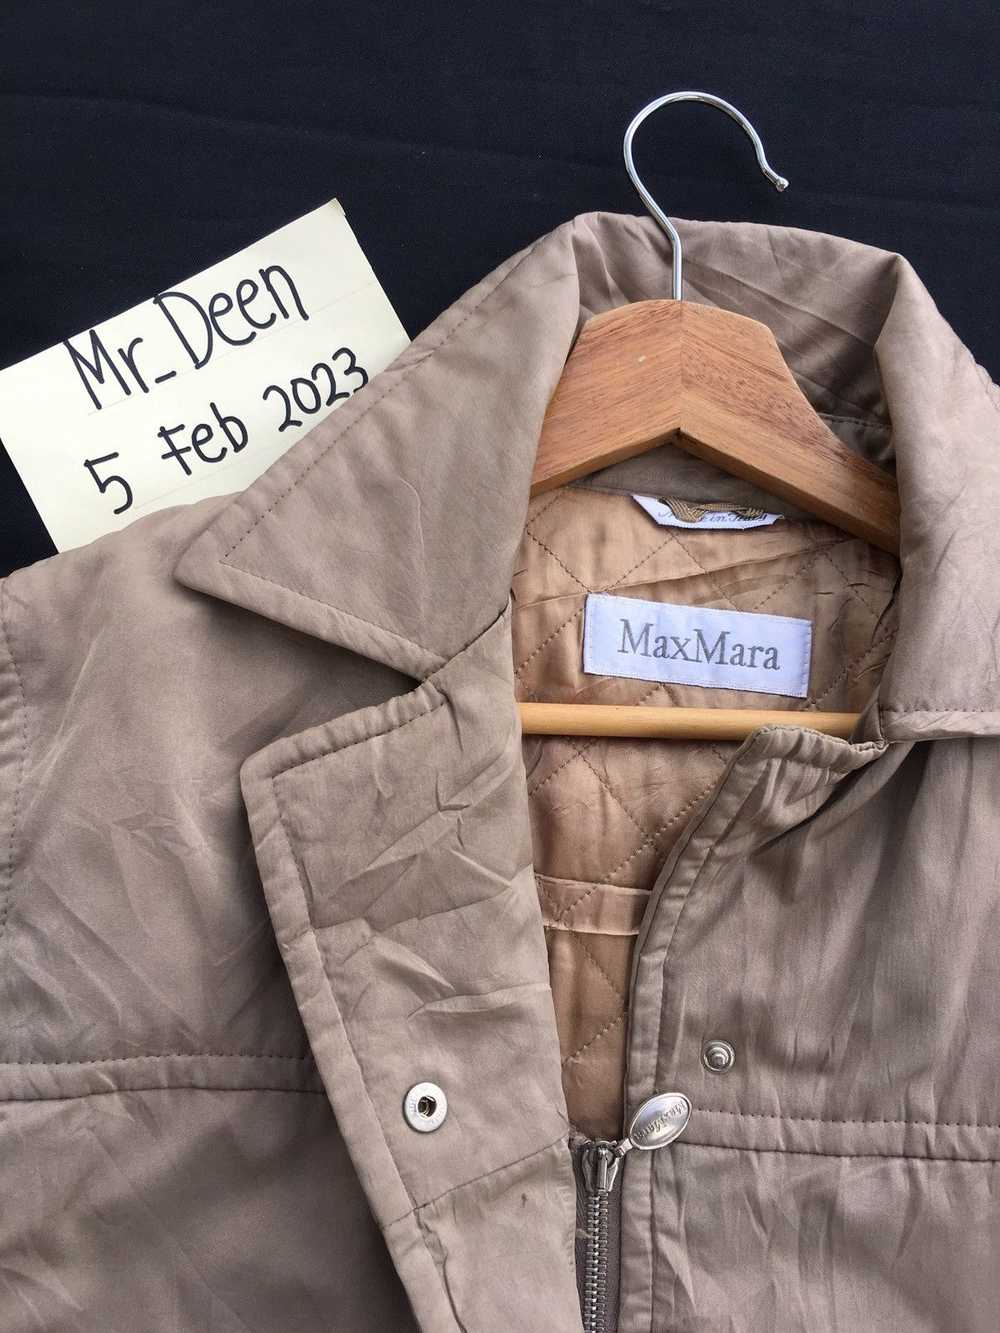 Max Mara Rare Vintage Max Mara Winter Jacket - image 1